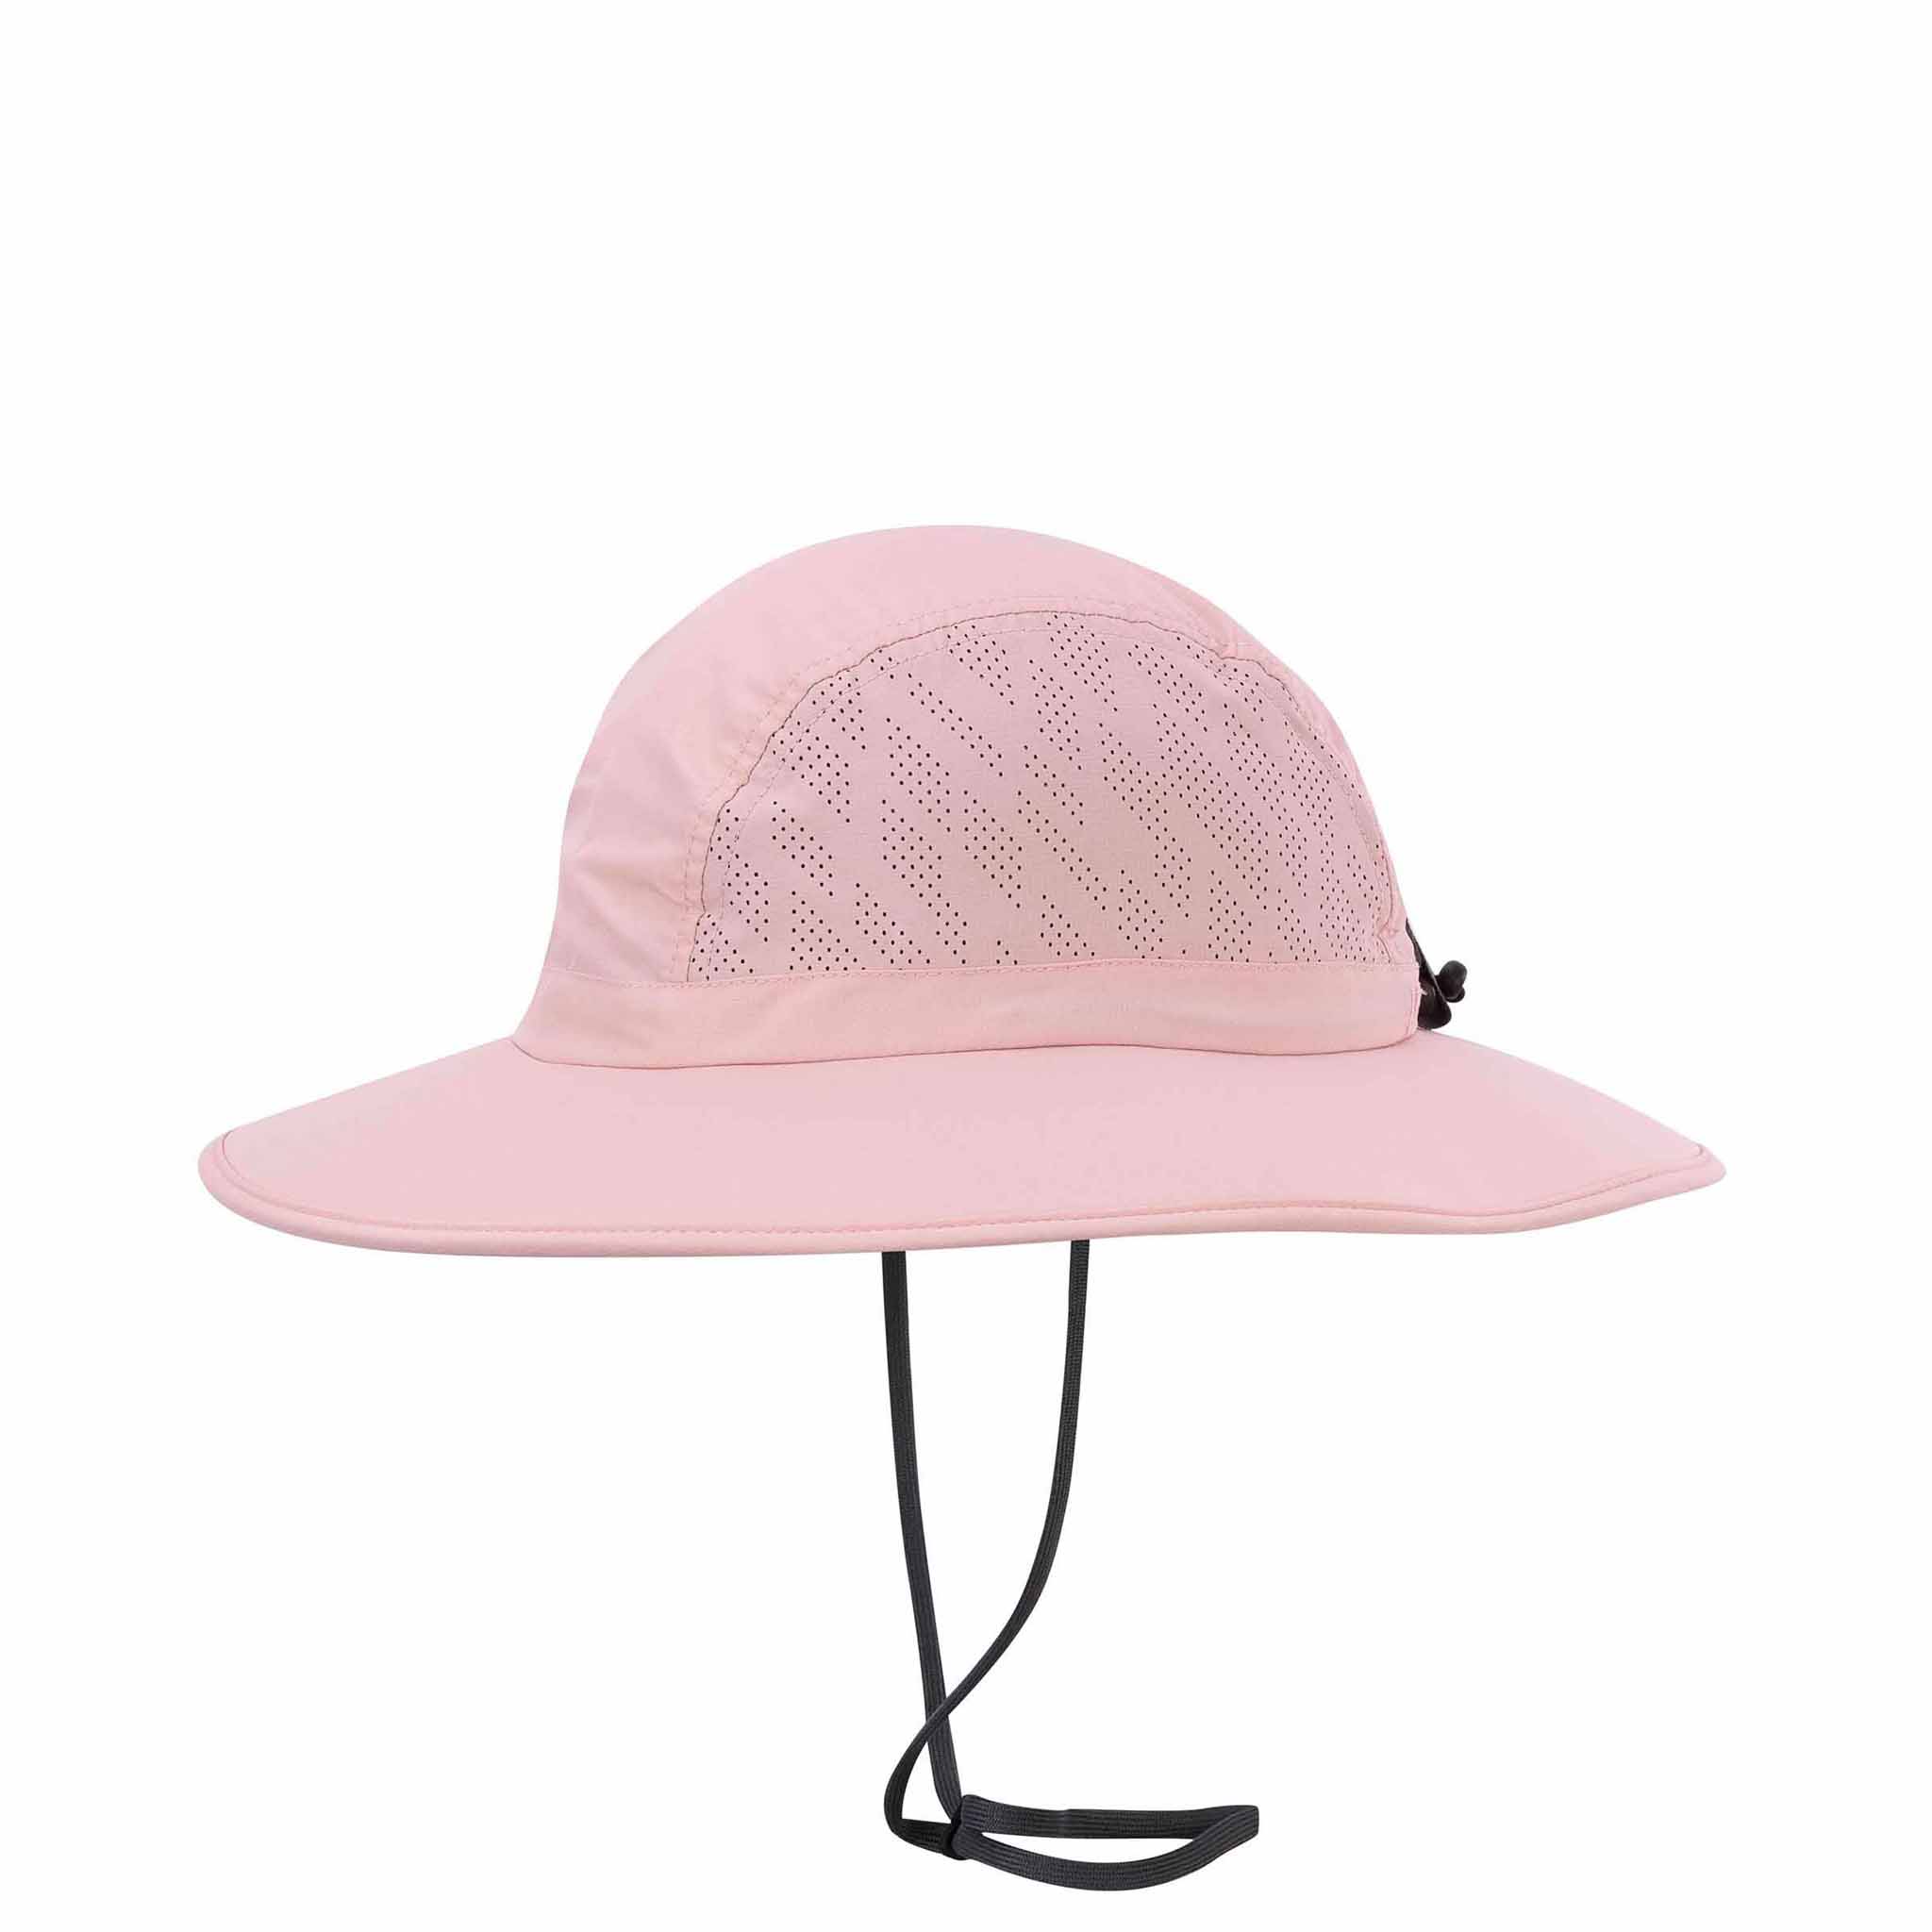 Pistil Women's Refuge Sun Hat - Juniper